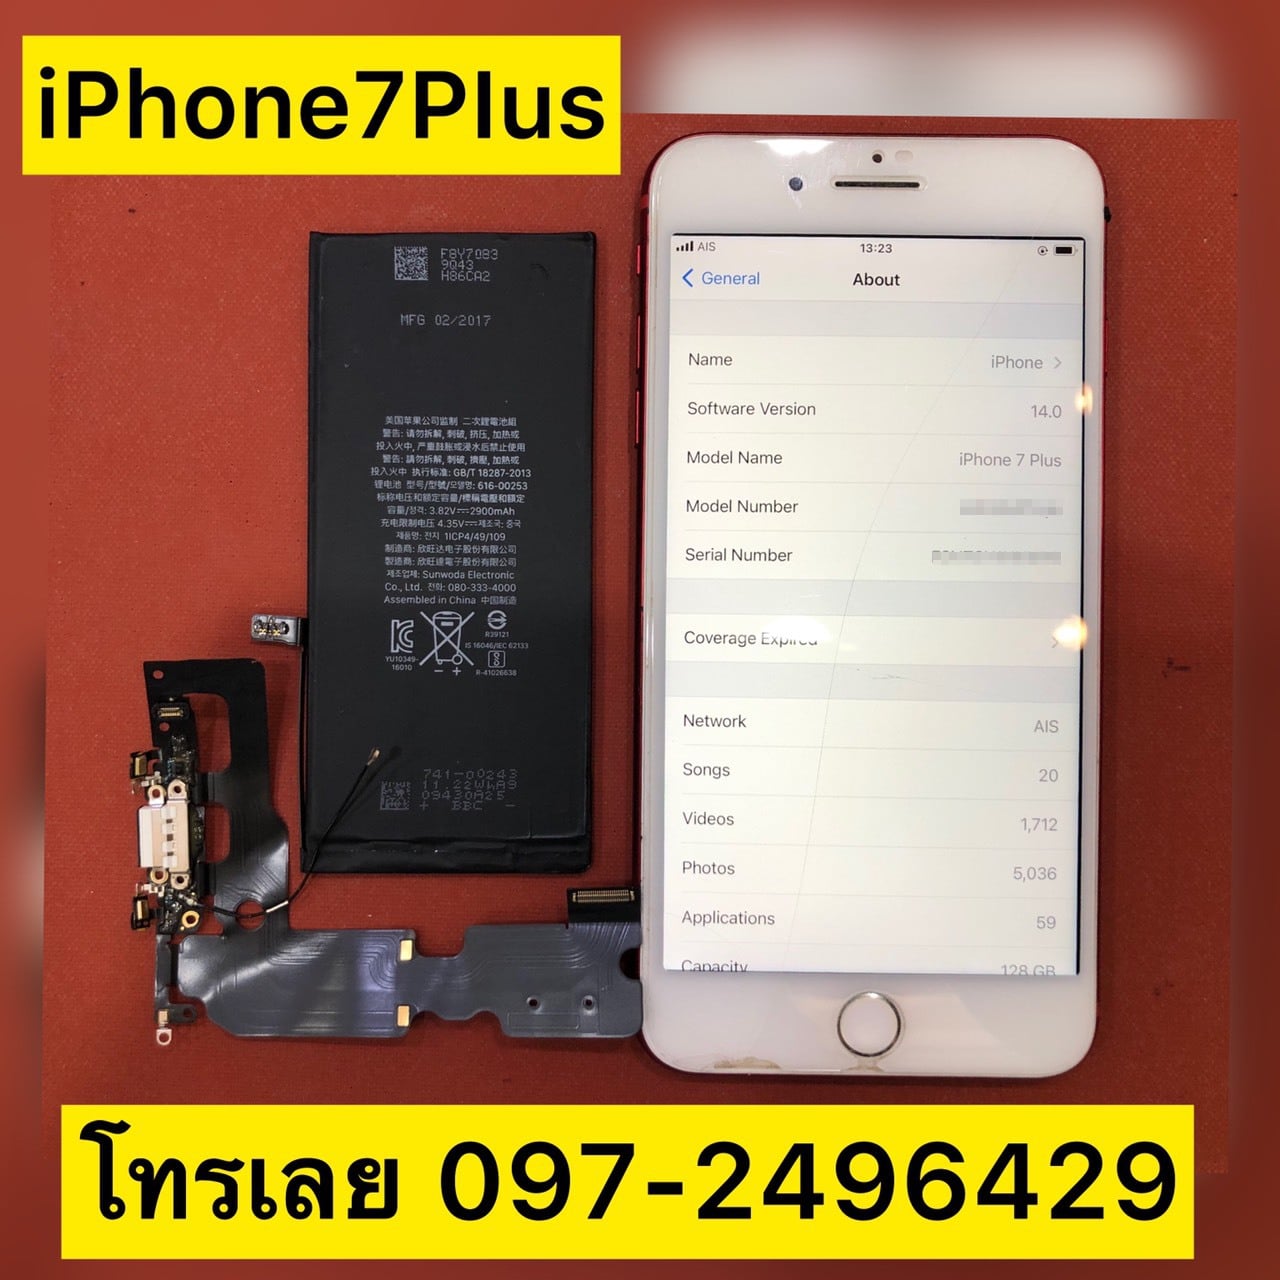 ซ่อม iPhone ไอโฟน ฟอร์จูน ร้านไหนดีที่สุด อะไหล่แท้ มีประกัน 🥇 ศูนย์ซ่อม โทรศัพท์มือถือ มือถือทุกรุ่น ทุกยี่ห้อ iPhone | Apple | Samsung | Huawei